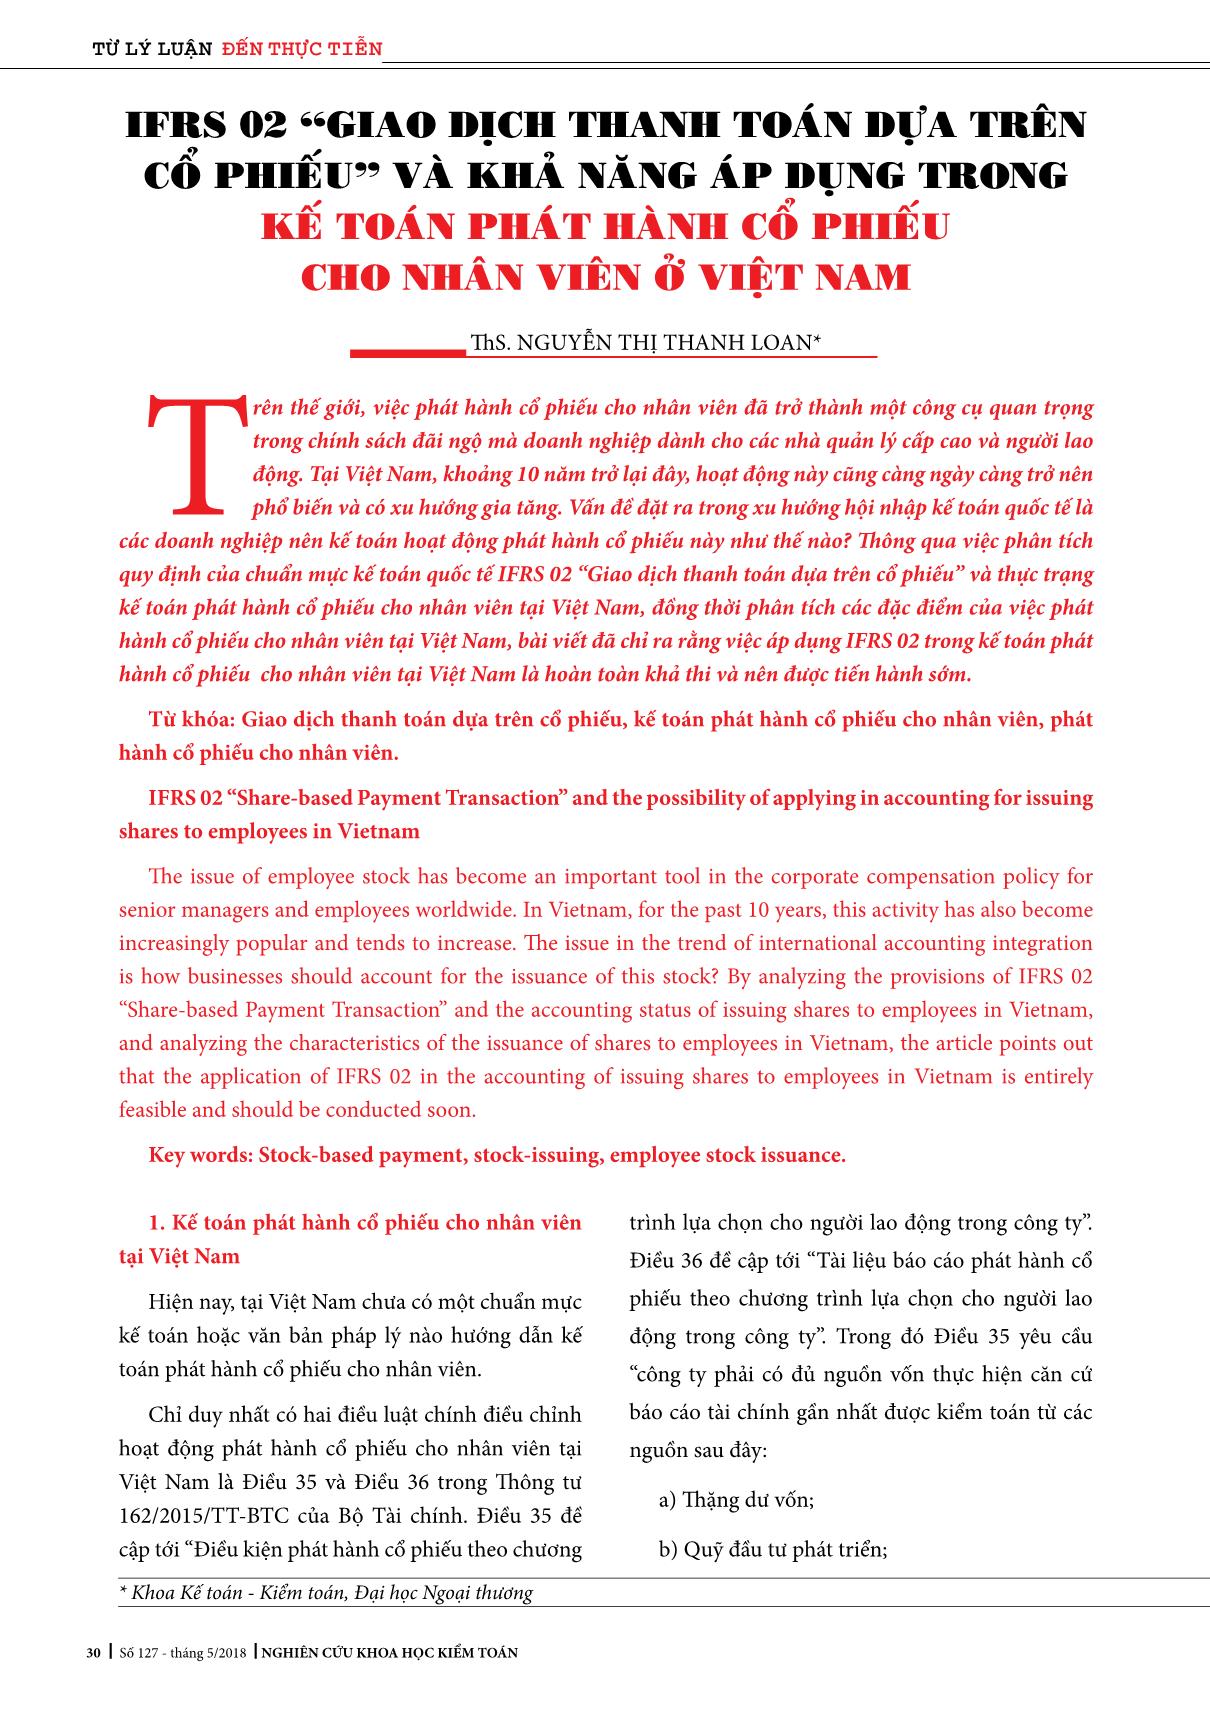 Kế toán phát hành cổ phiếu cho nhân viên ở Việt Nam trang 1